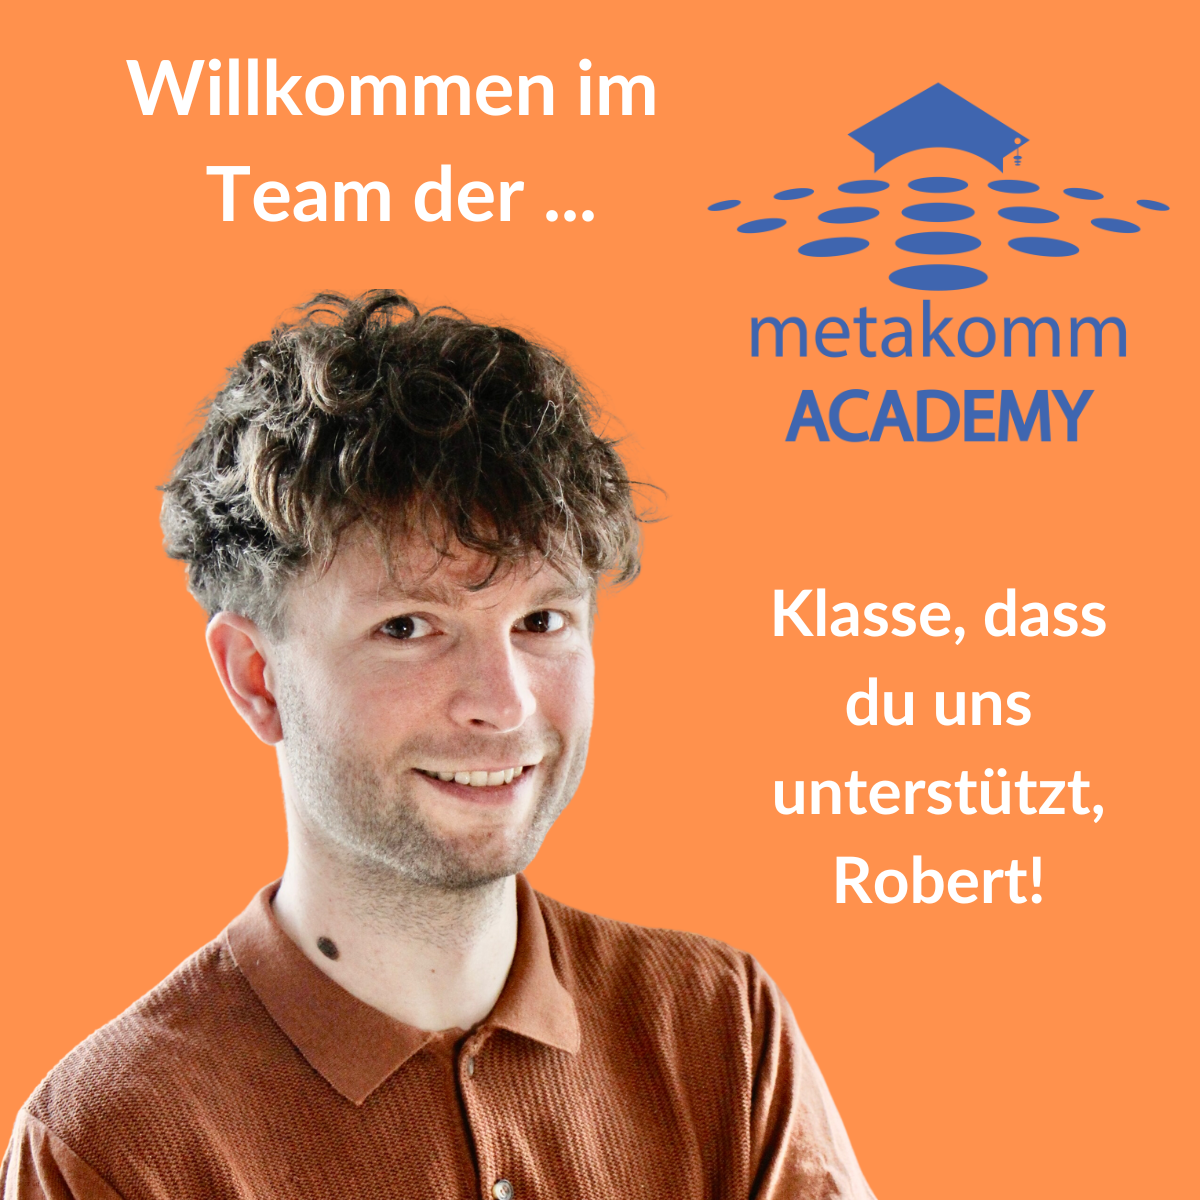 Robert Berthold ist neuer Trainer in der Metakomm Academy